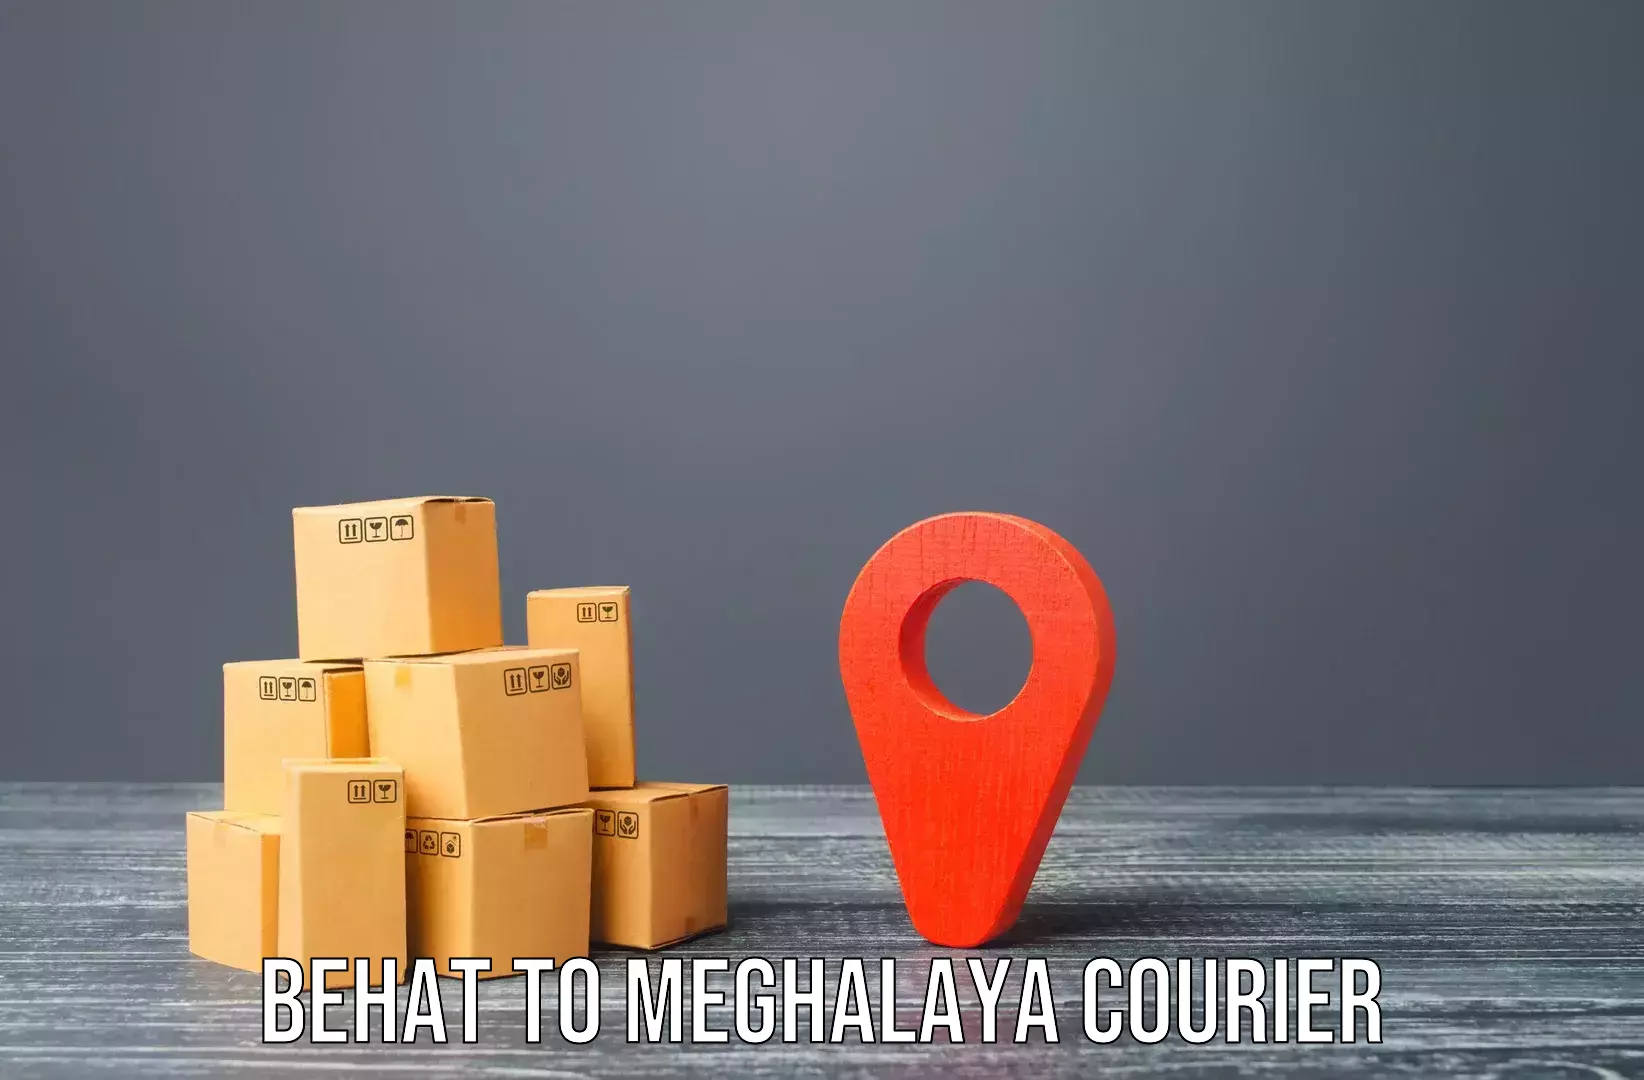 Premium moving services Behat to Meghalaya